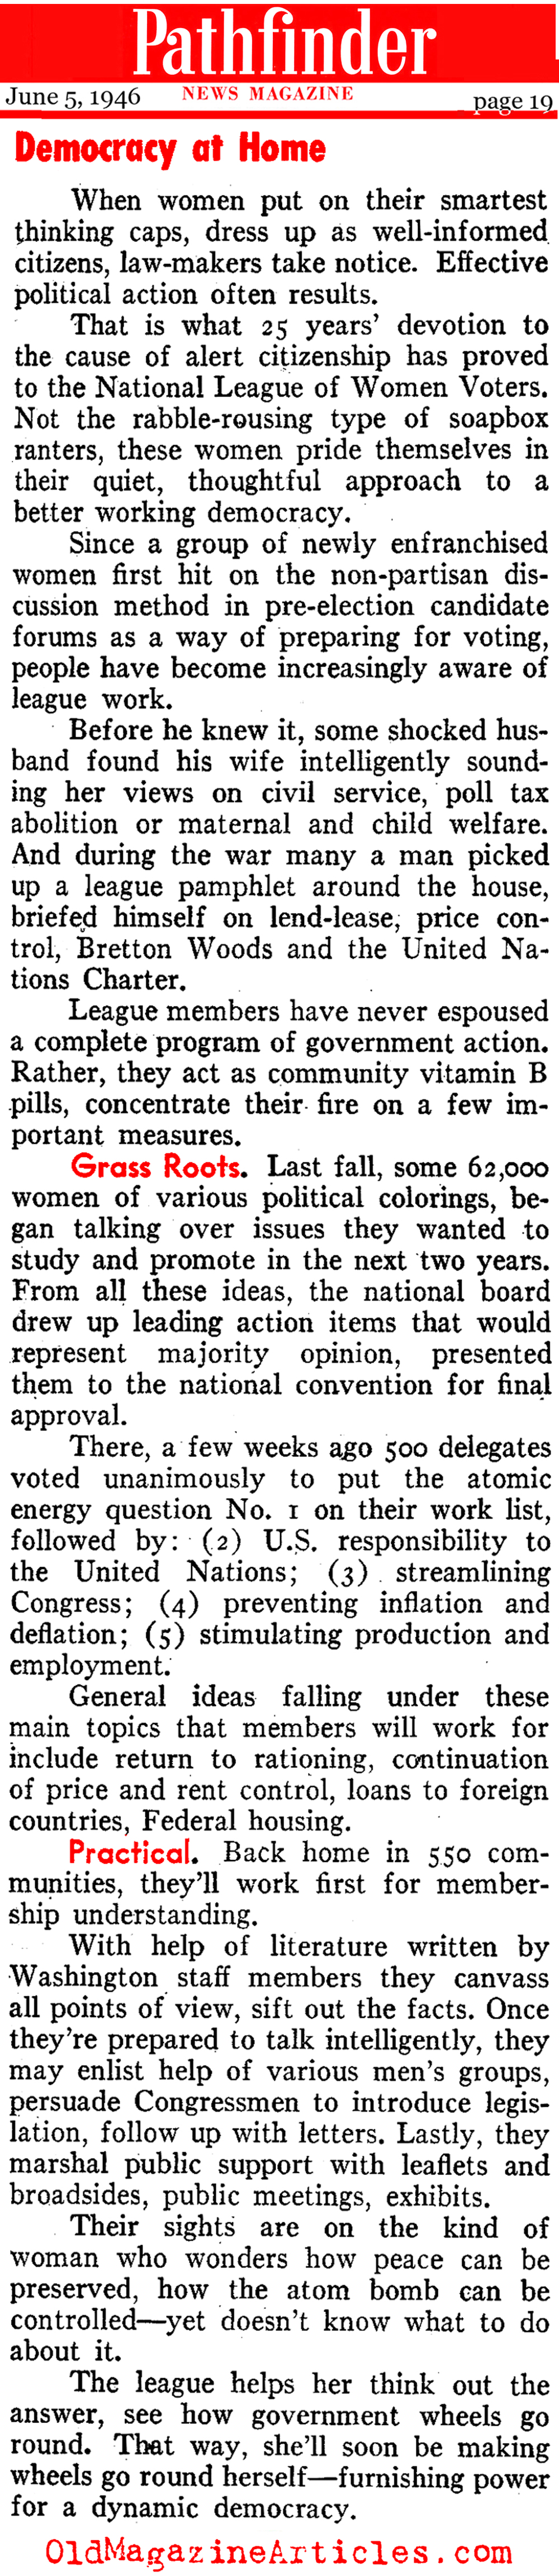 25 Years of Women Voting (Pathfinder Magazine, 1946)